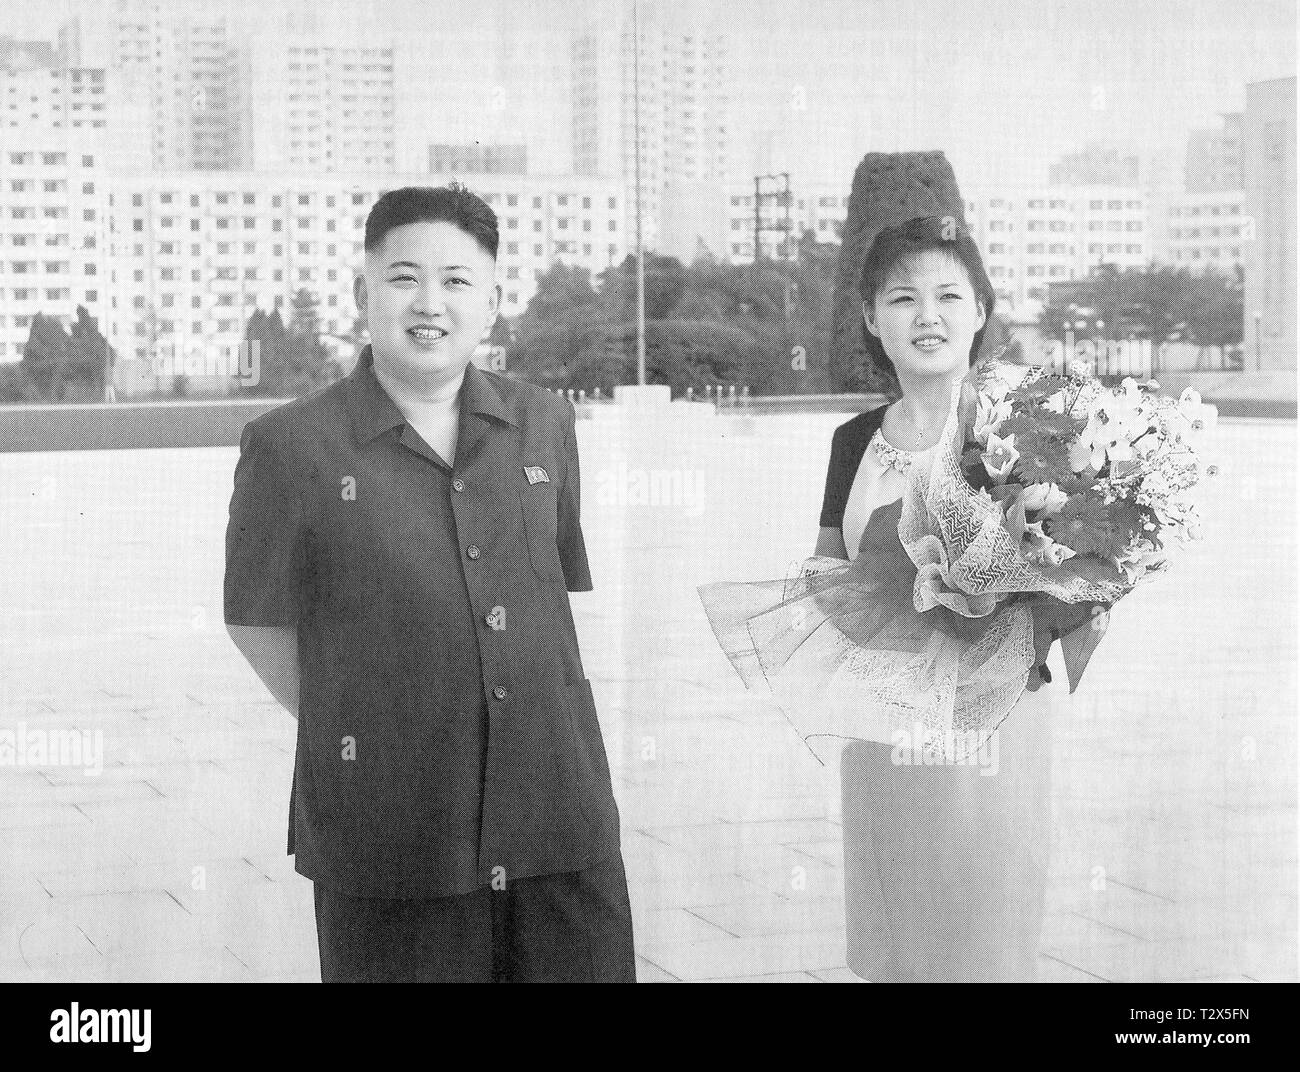 Pyongyang, North-Korea - Novembre 13, 2011 : Analyse d'une photographie officielle de chef de Nord-coréens Kim Jong-un et son épouse Kim Ri Sol-ju ou Lee Seol Banque D'Images